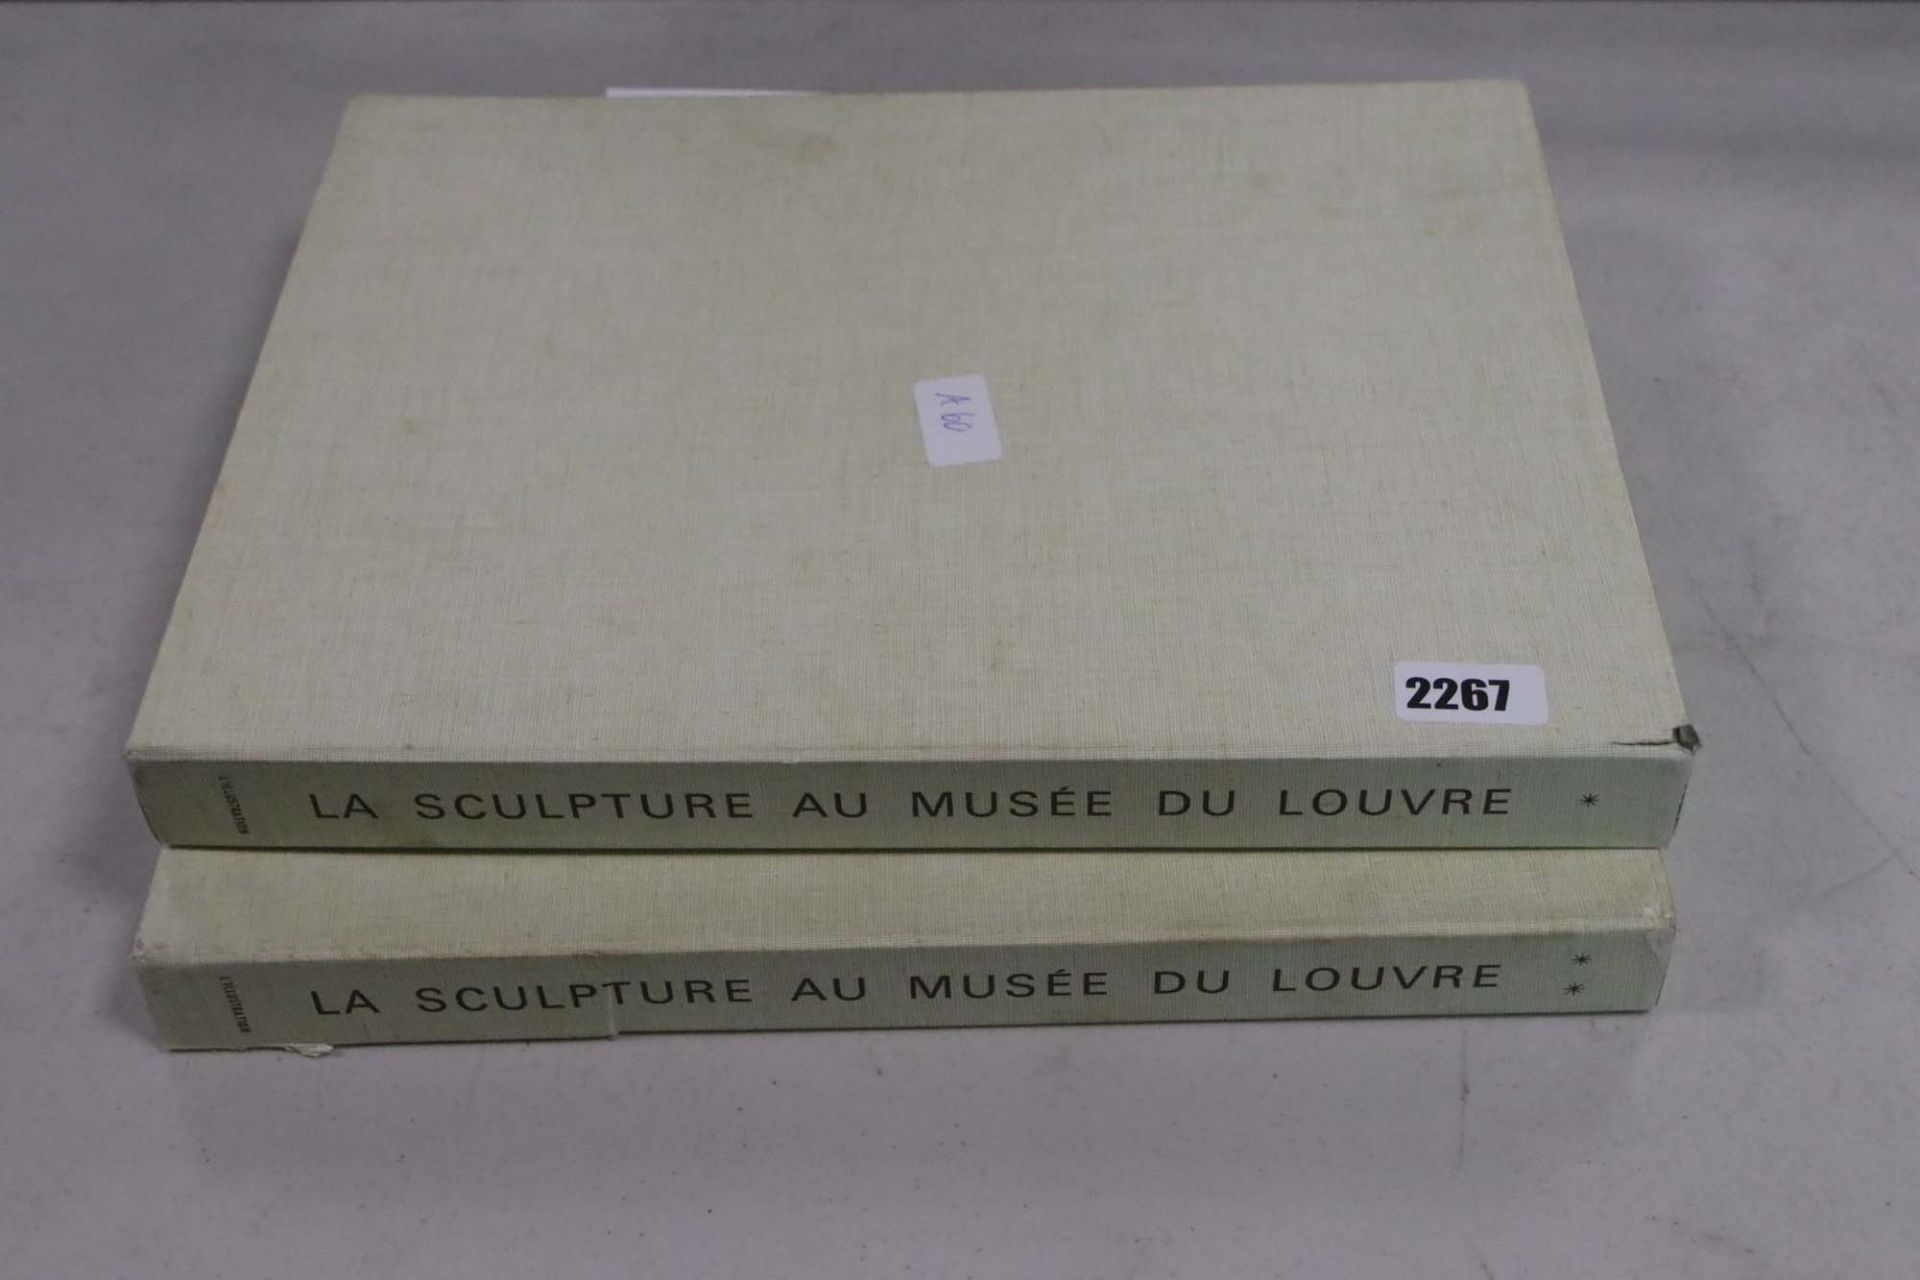 2 volumes slip cases of La Sculpture au Musee Du Louvre - Image 2 of 2